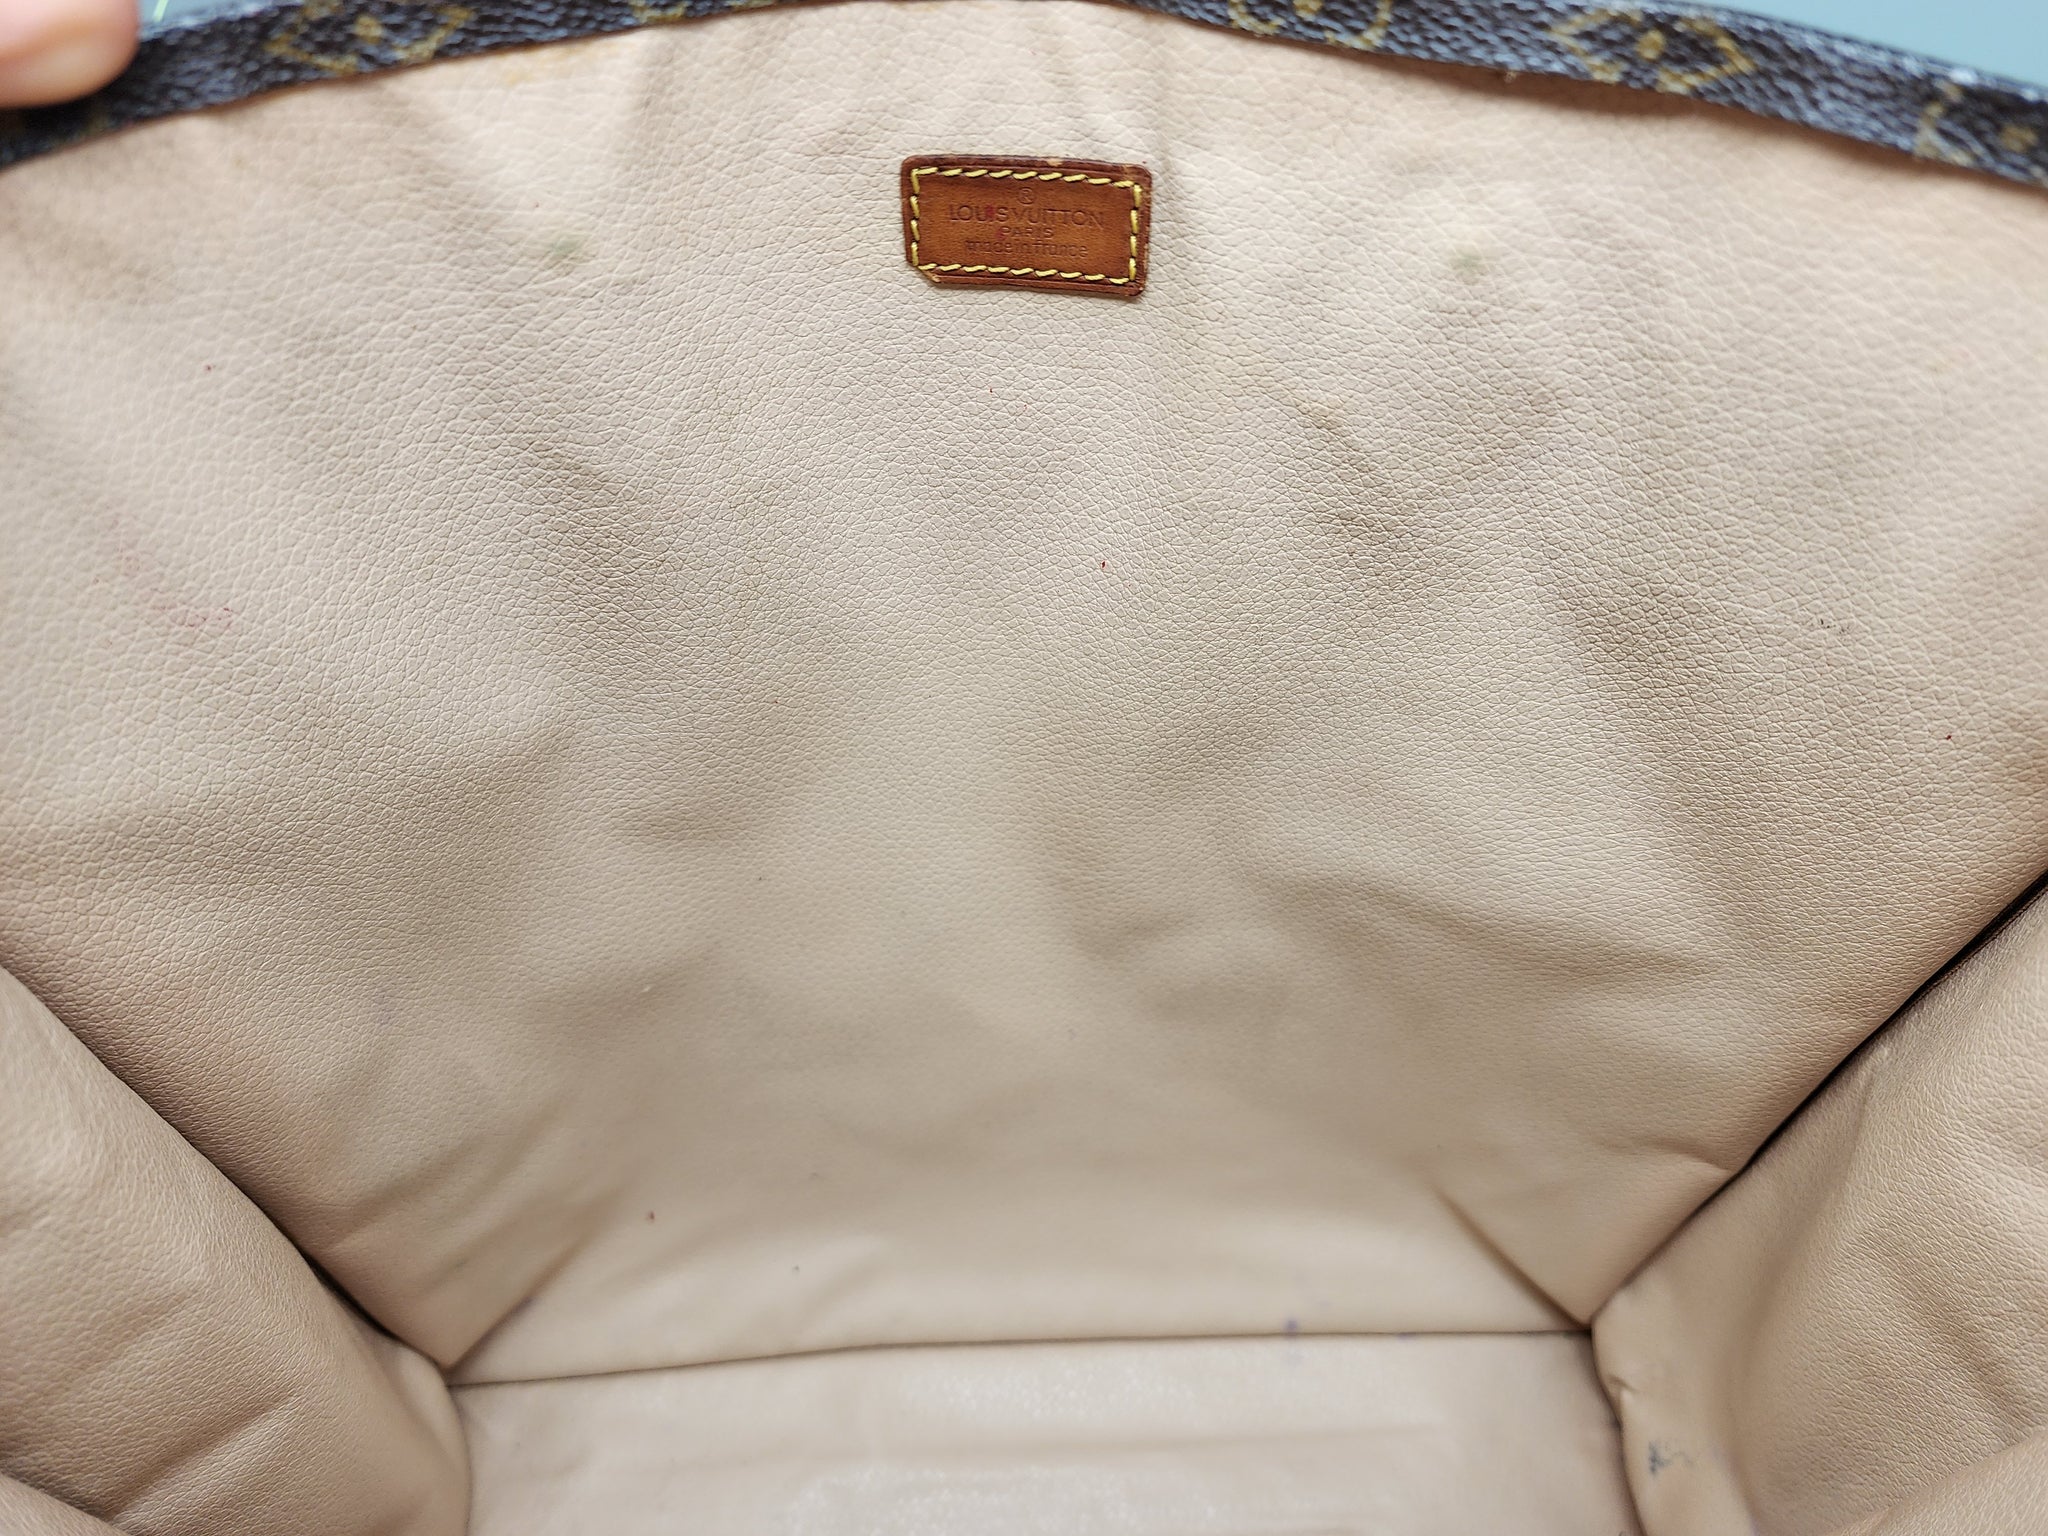 Louis Vuitton Sac Plat Tote 392825, Print Sleeping Bag